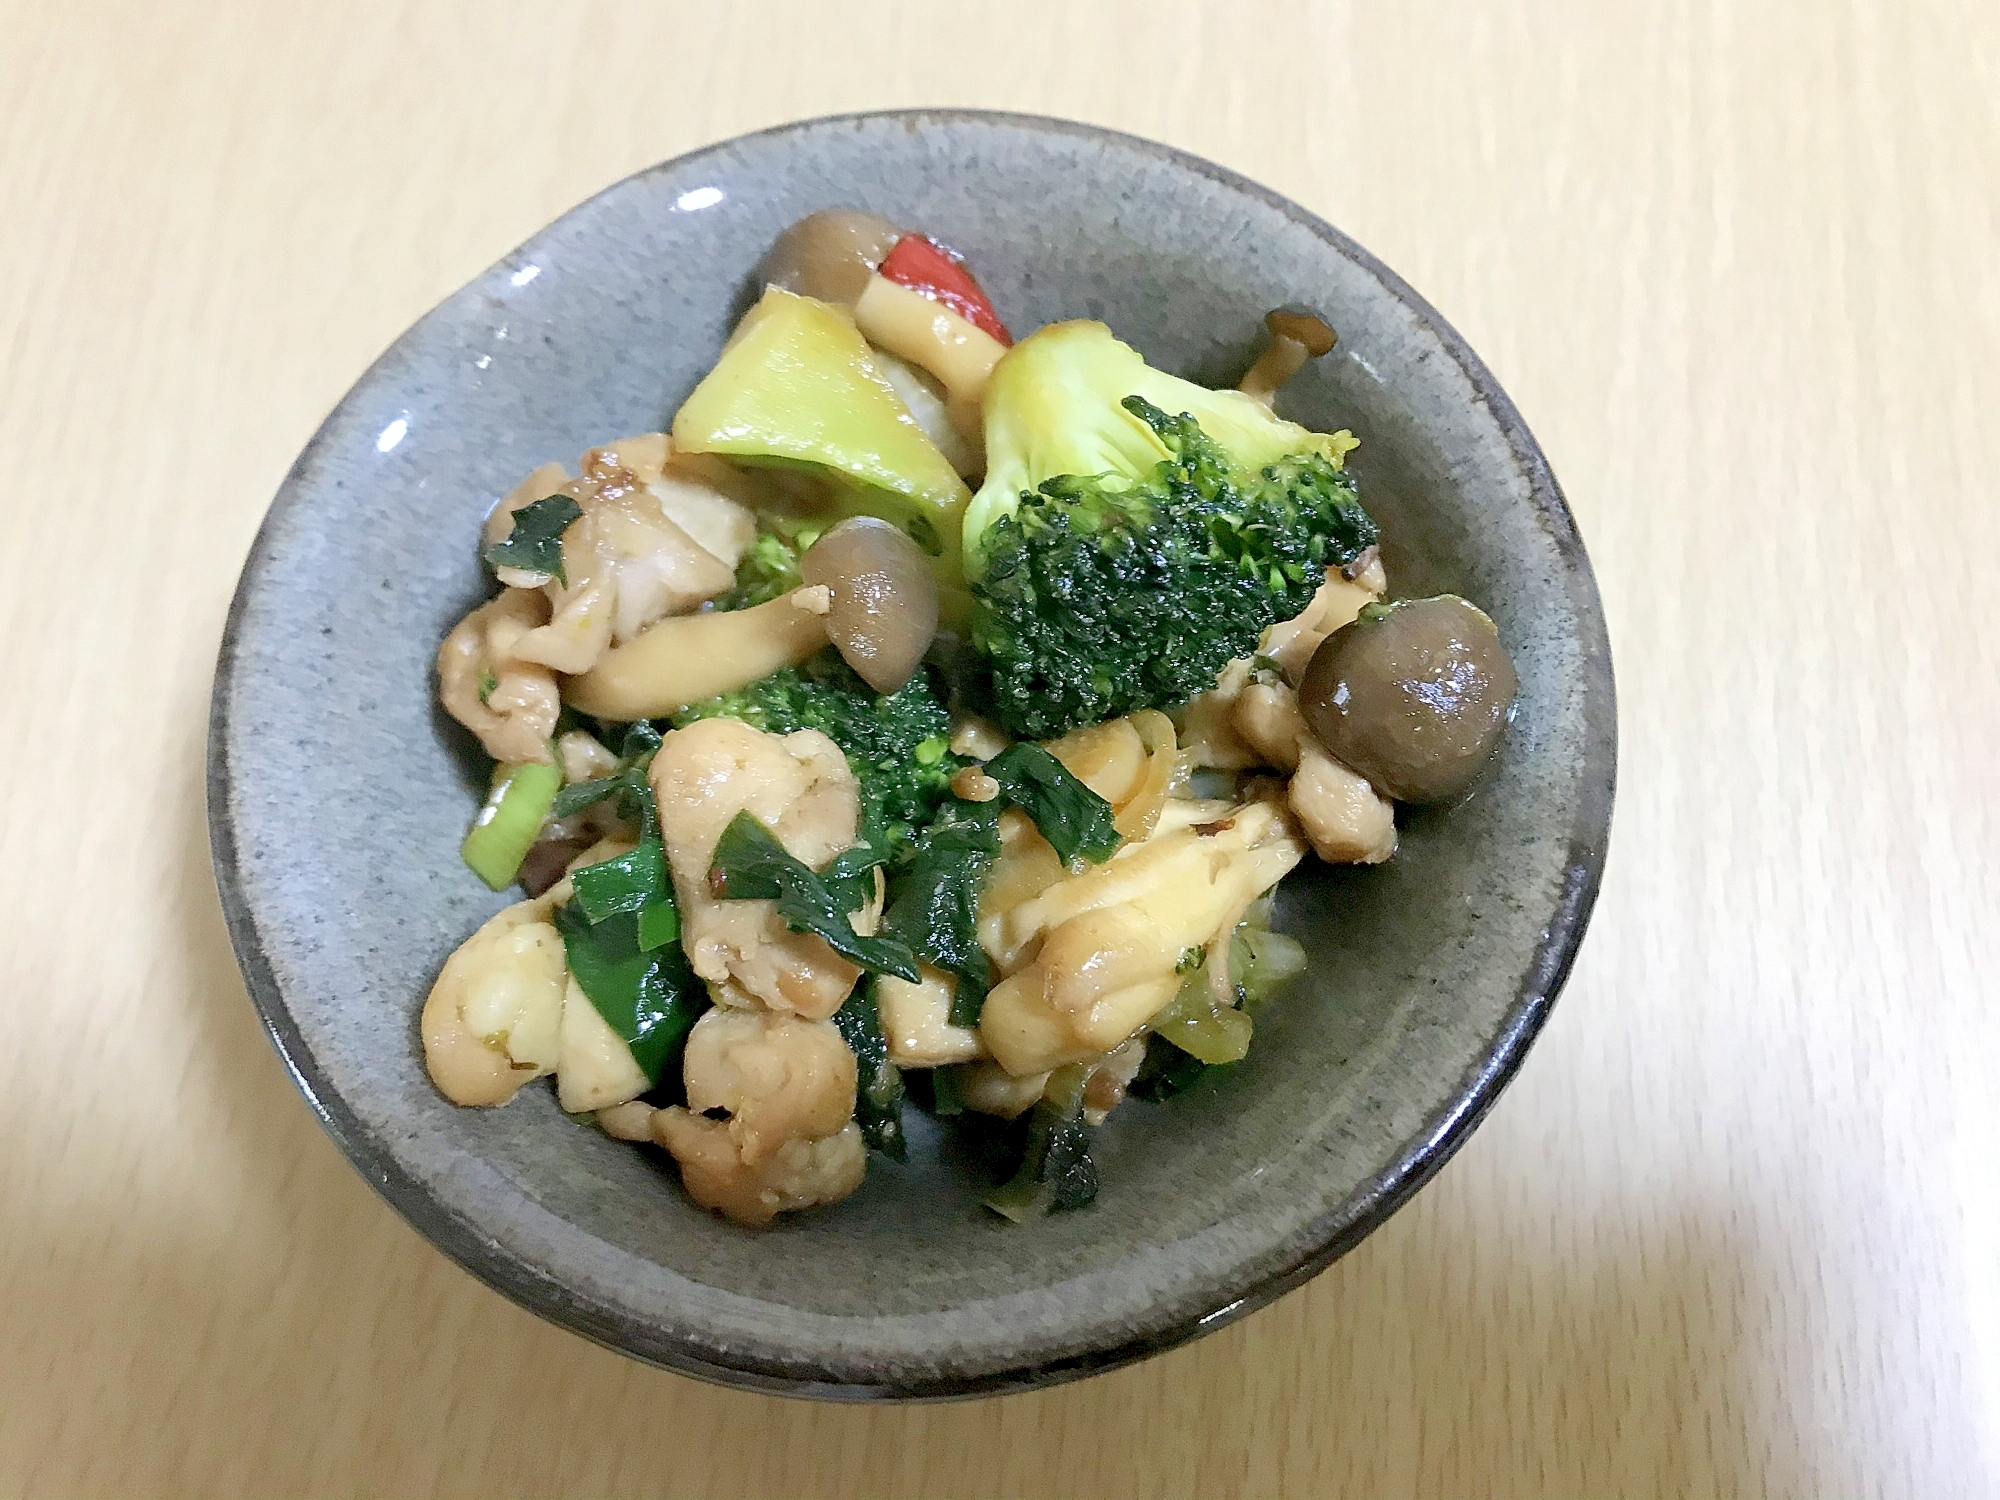 鶏肉と野菜の台湾風炒め煮